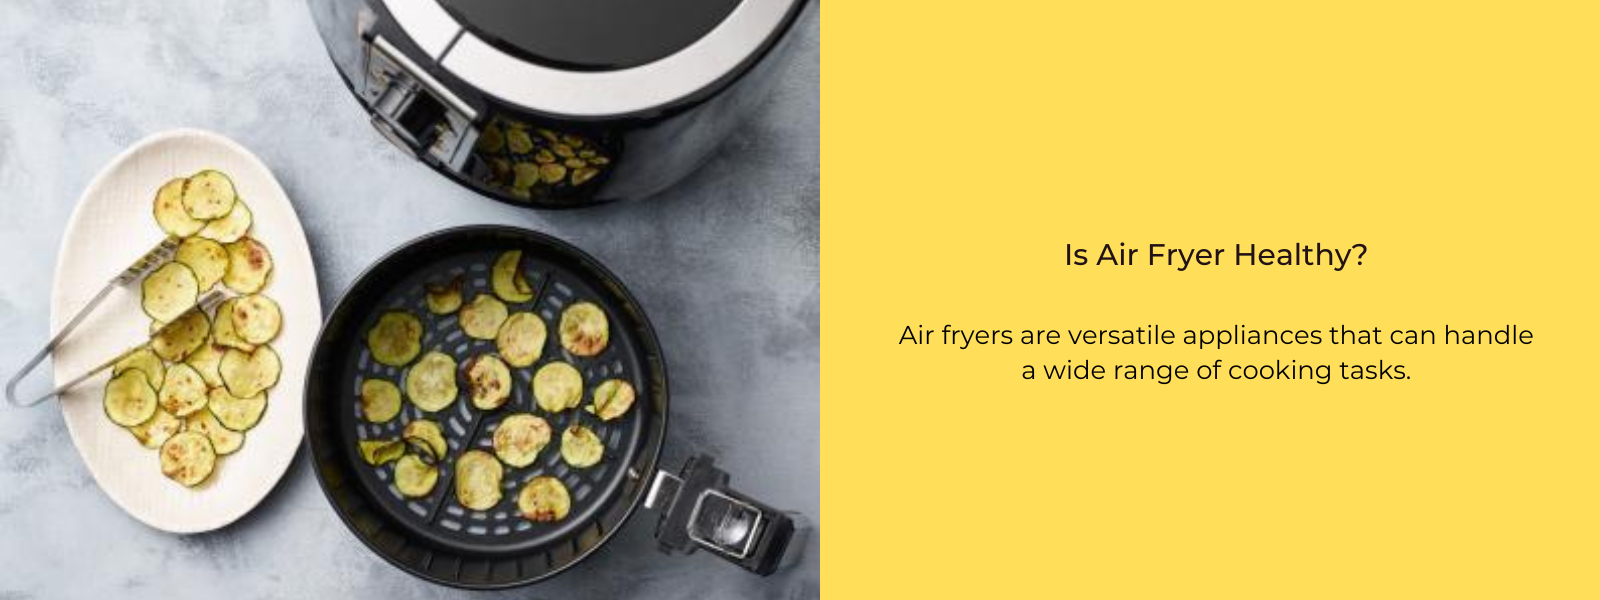 Is Air Fryer Healthy?